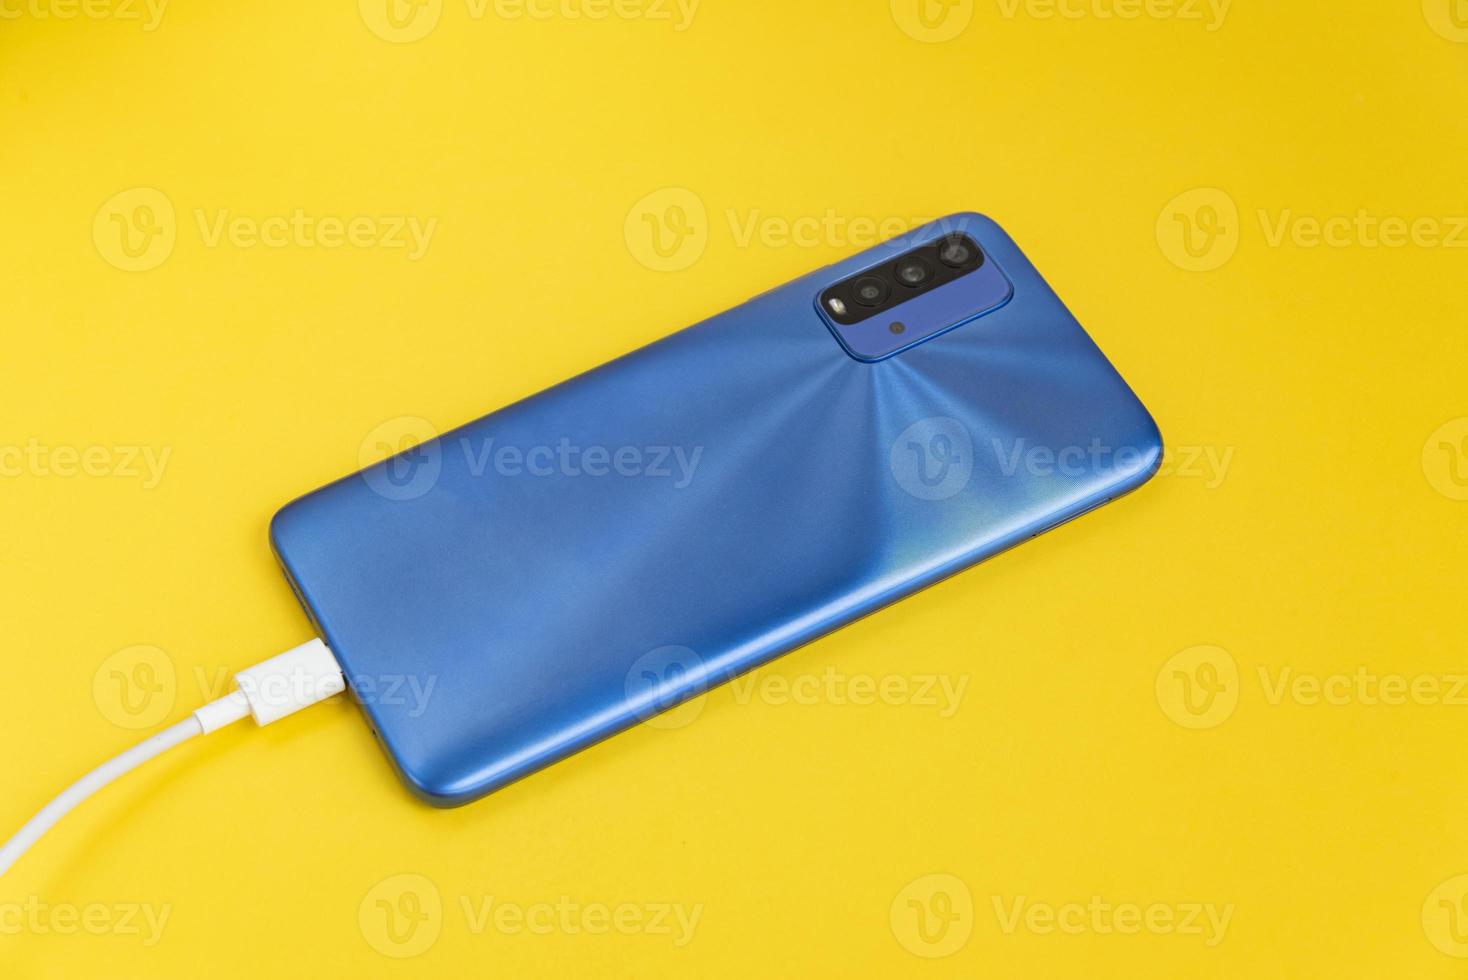 téléphone portable bleu connecté au type de câble usb - charge photo